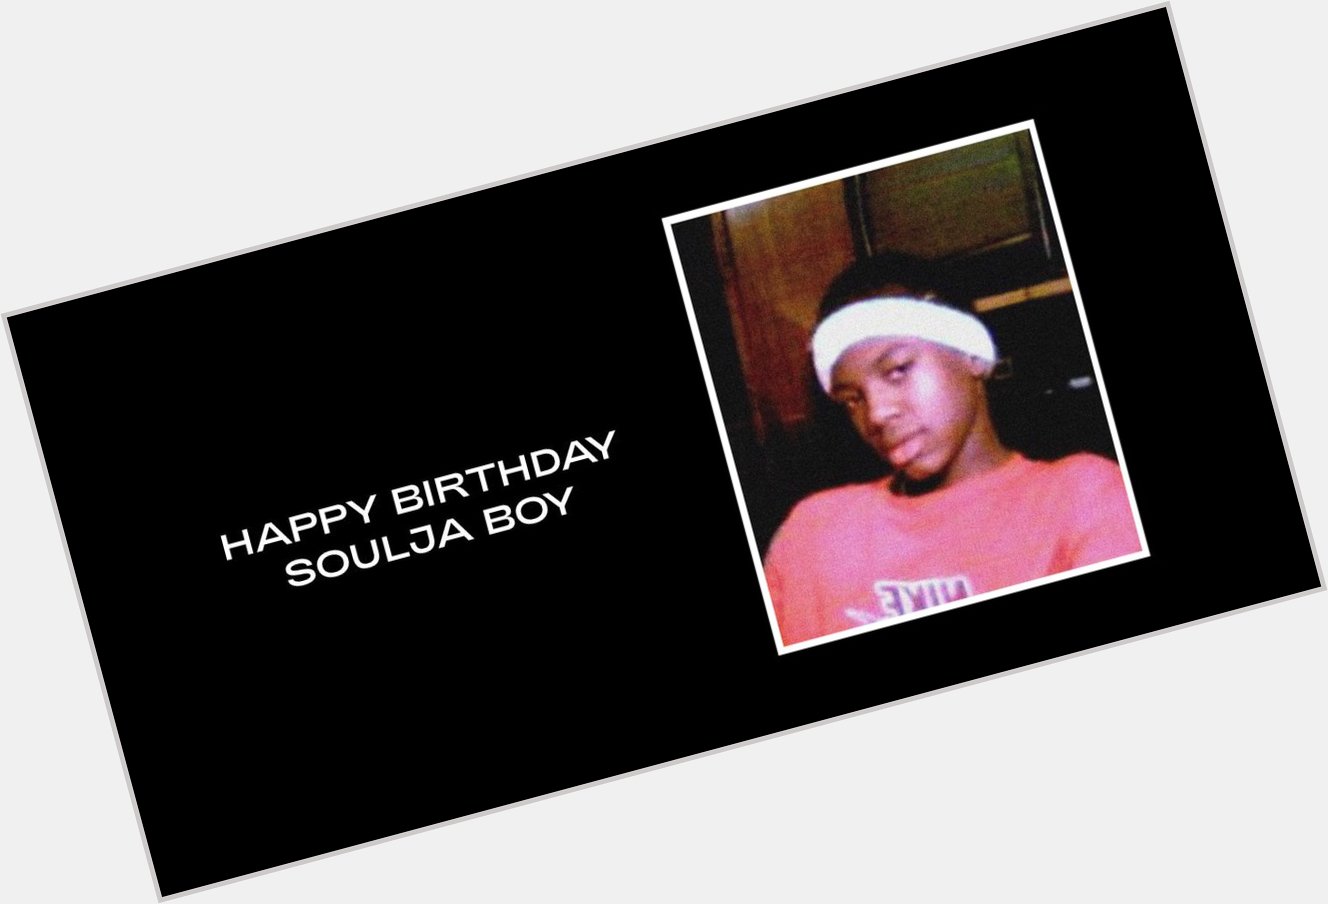  Happy Birthday Soulja Boy  